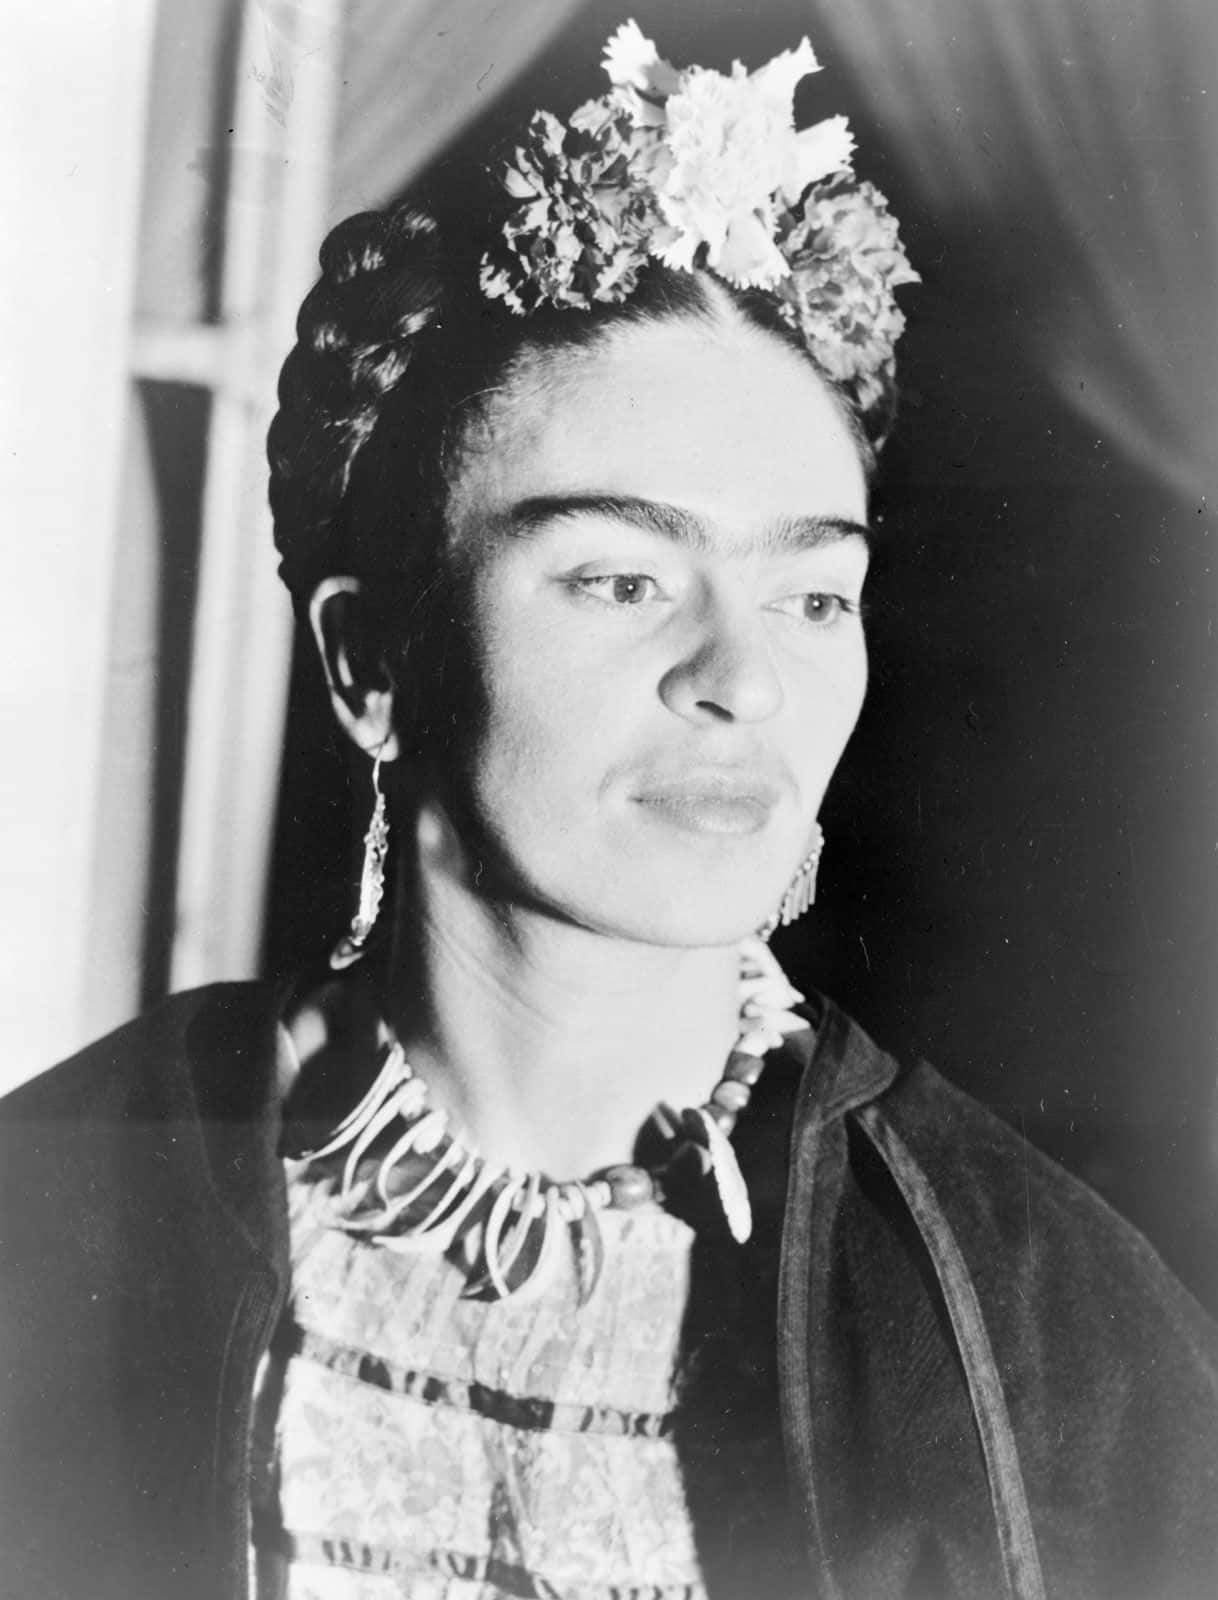 Porträtbildfrida Kahlo